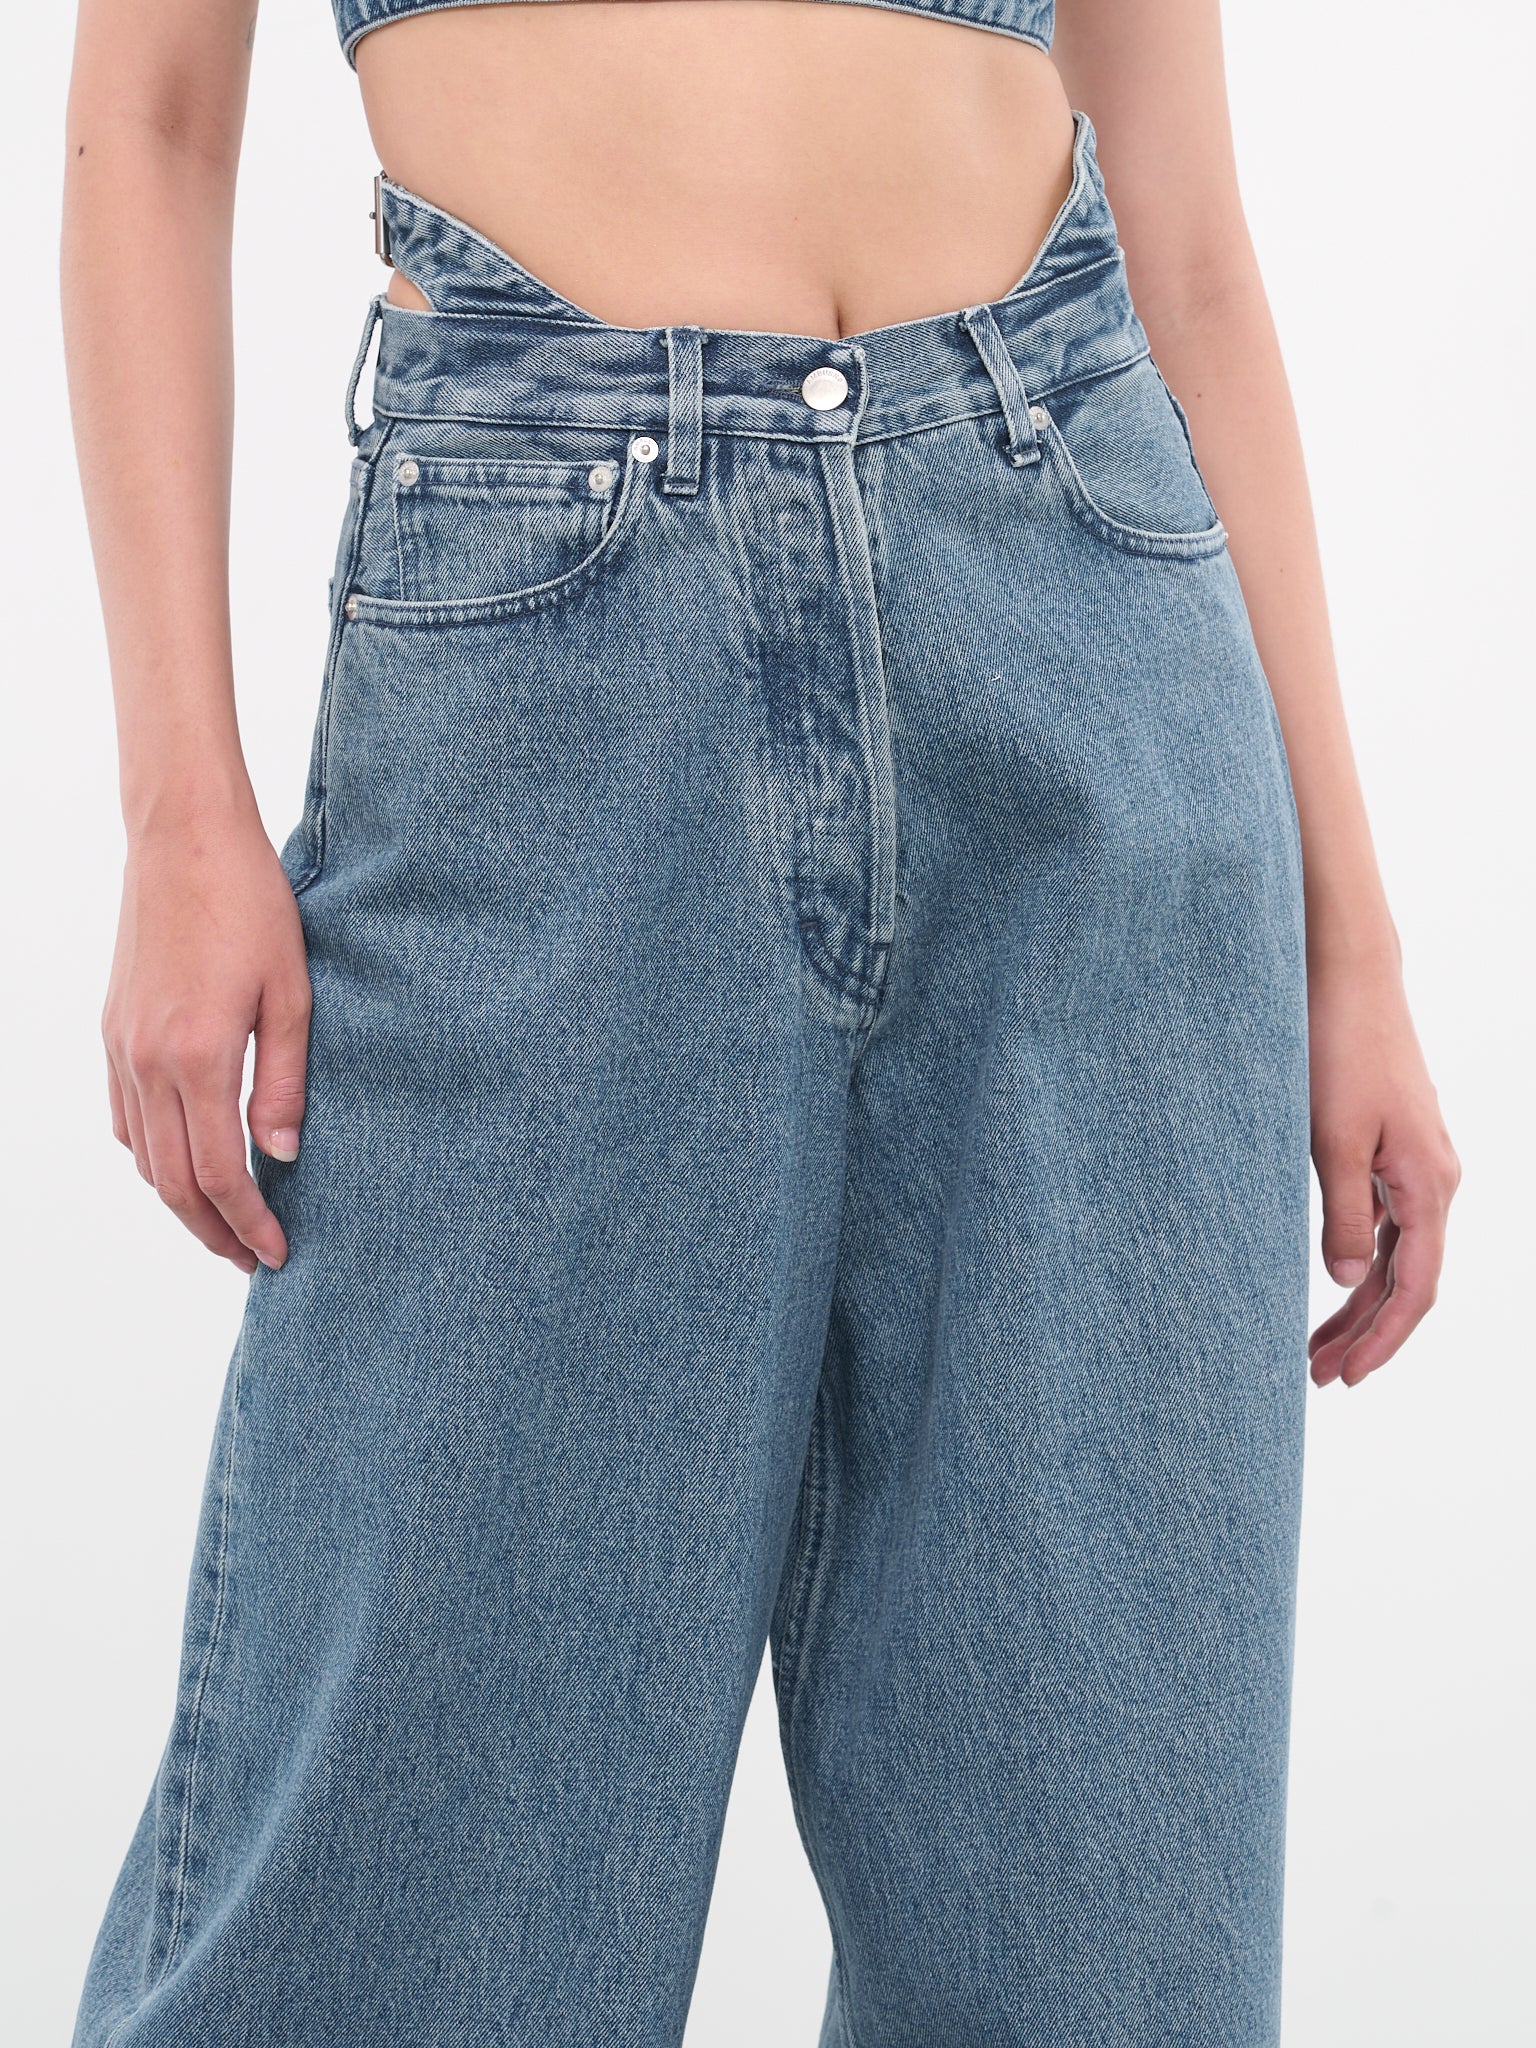 Belted Baggy Denim Pants (BWYA010-DEN002-4000-LIGHT-BLUE)